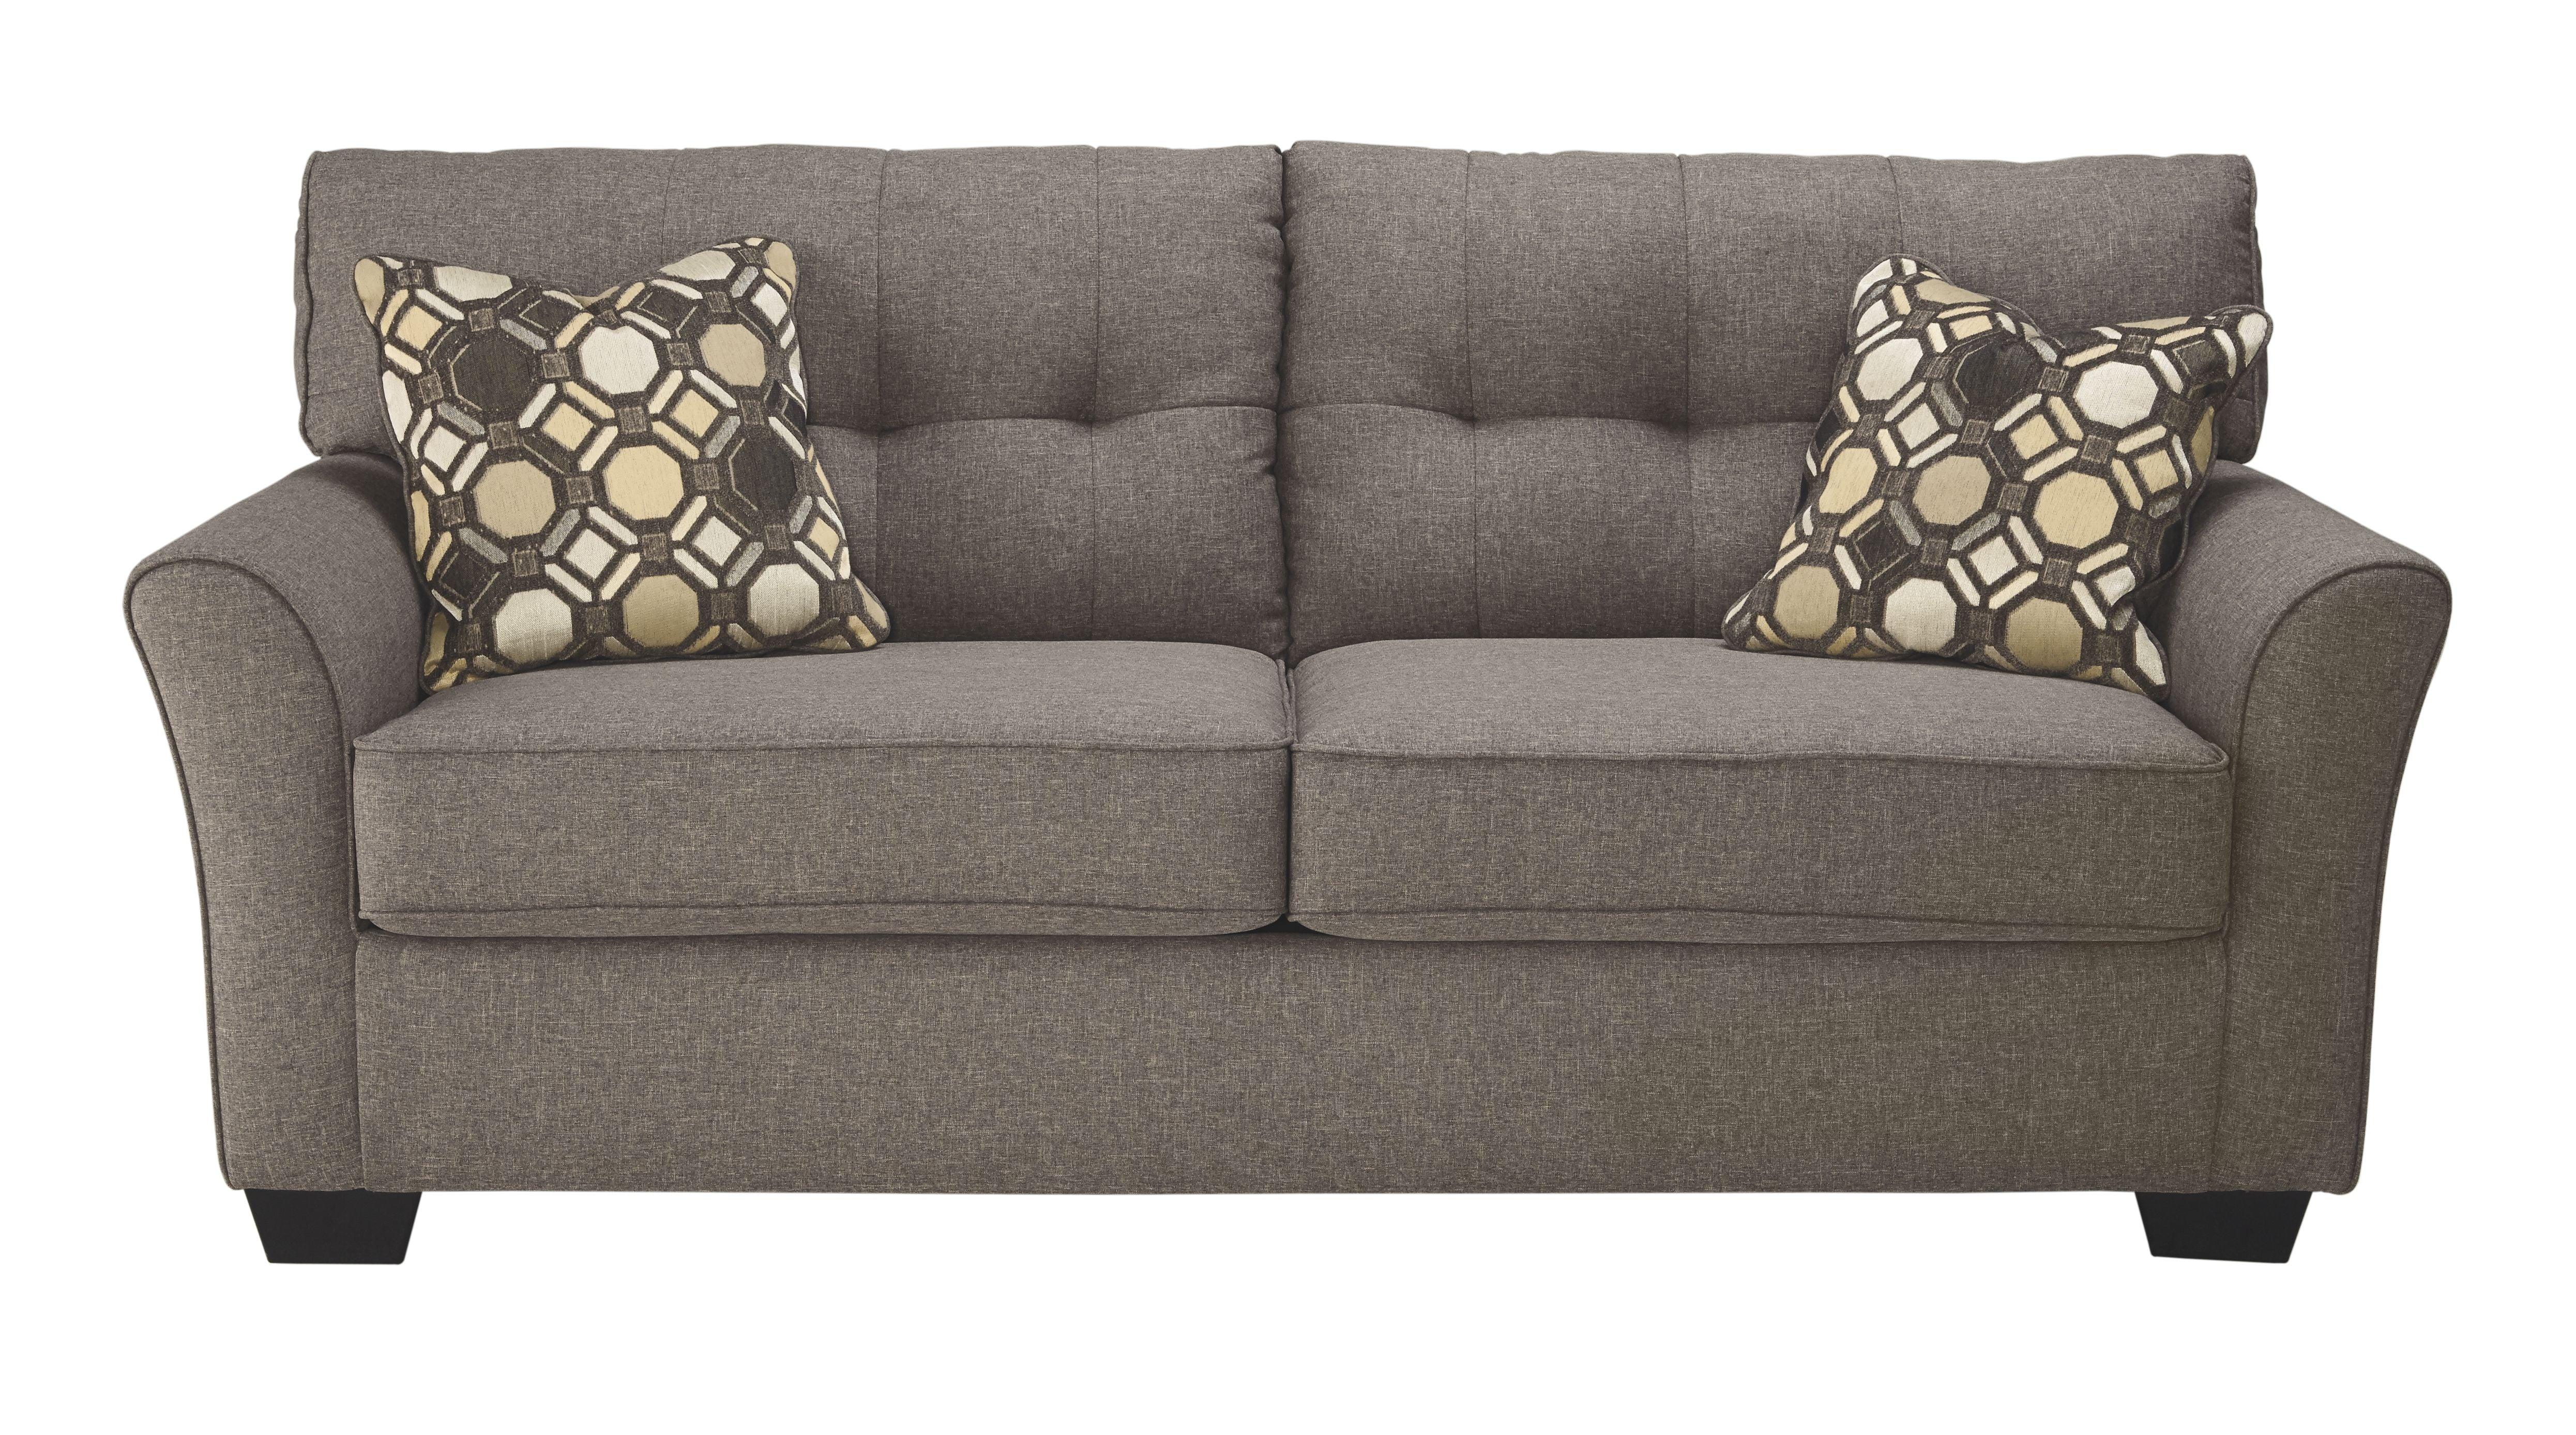 Ashley Furniture - Tibbee - Slate - Full Sofa Sleeper - 5th Avenue Furniture